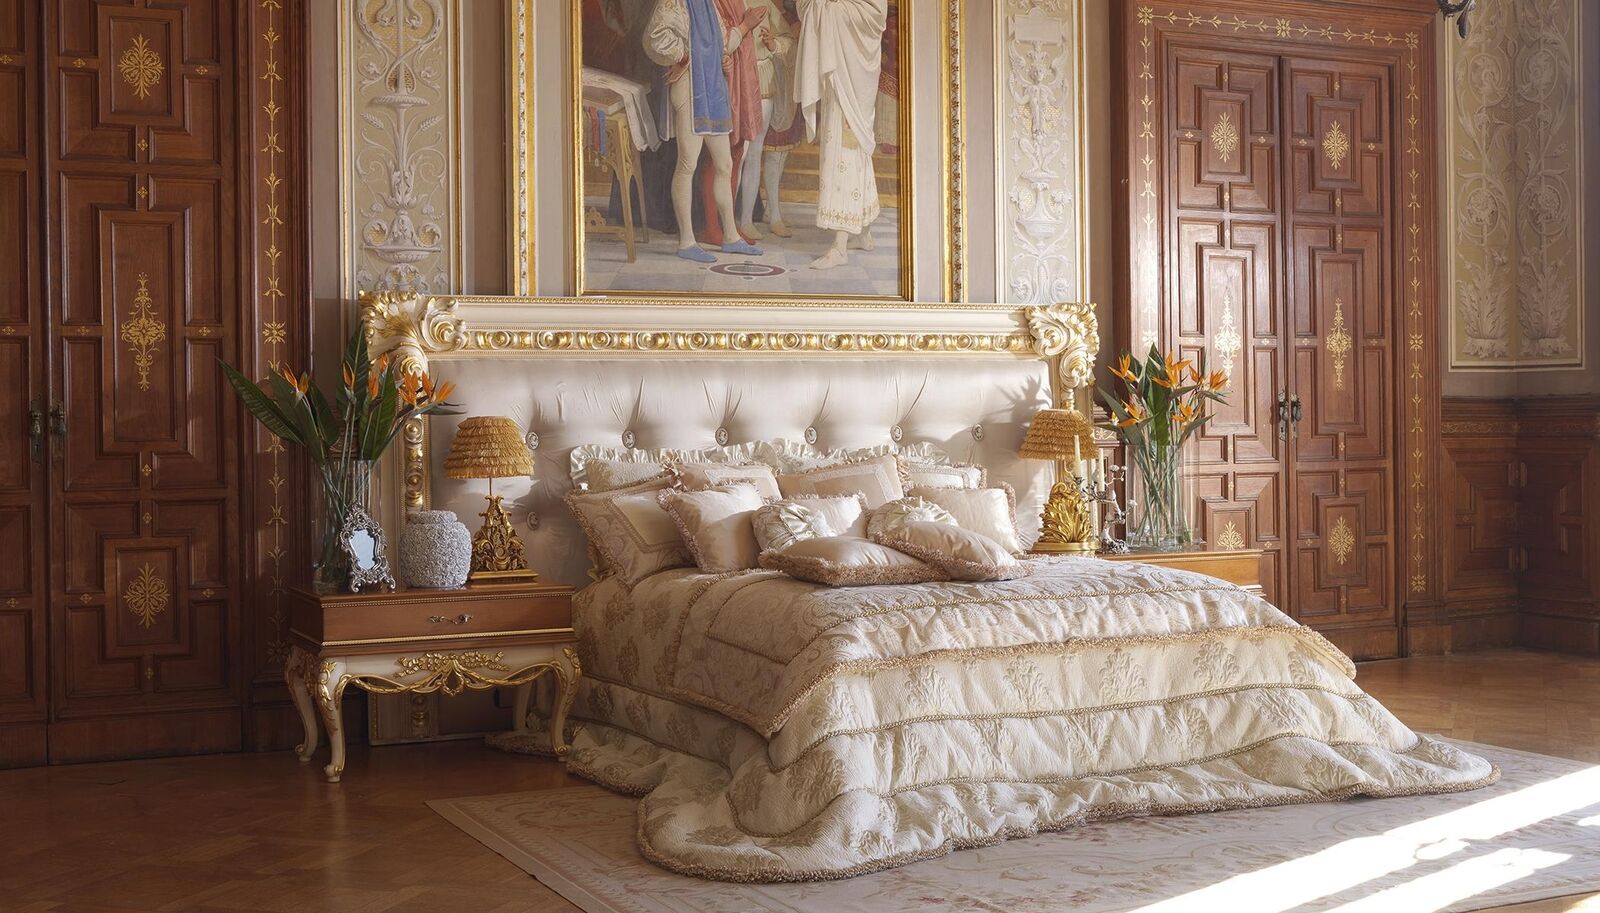 Chesterfield Bett Luxus Doppel Betten Italienische Möbel Einrichtung Boiserie